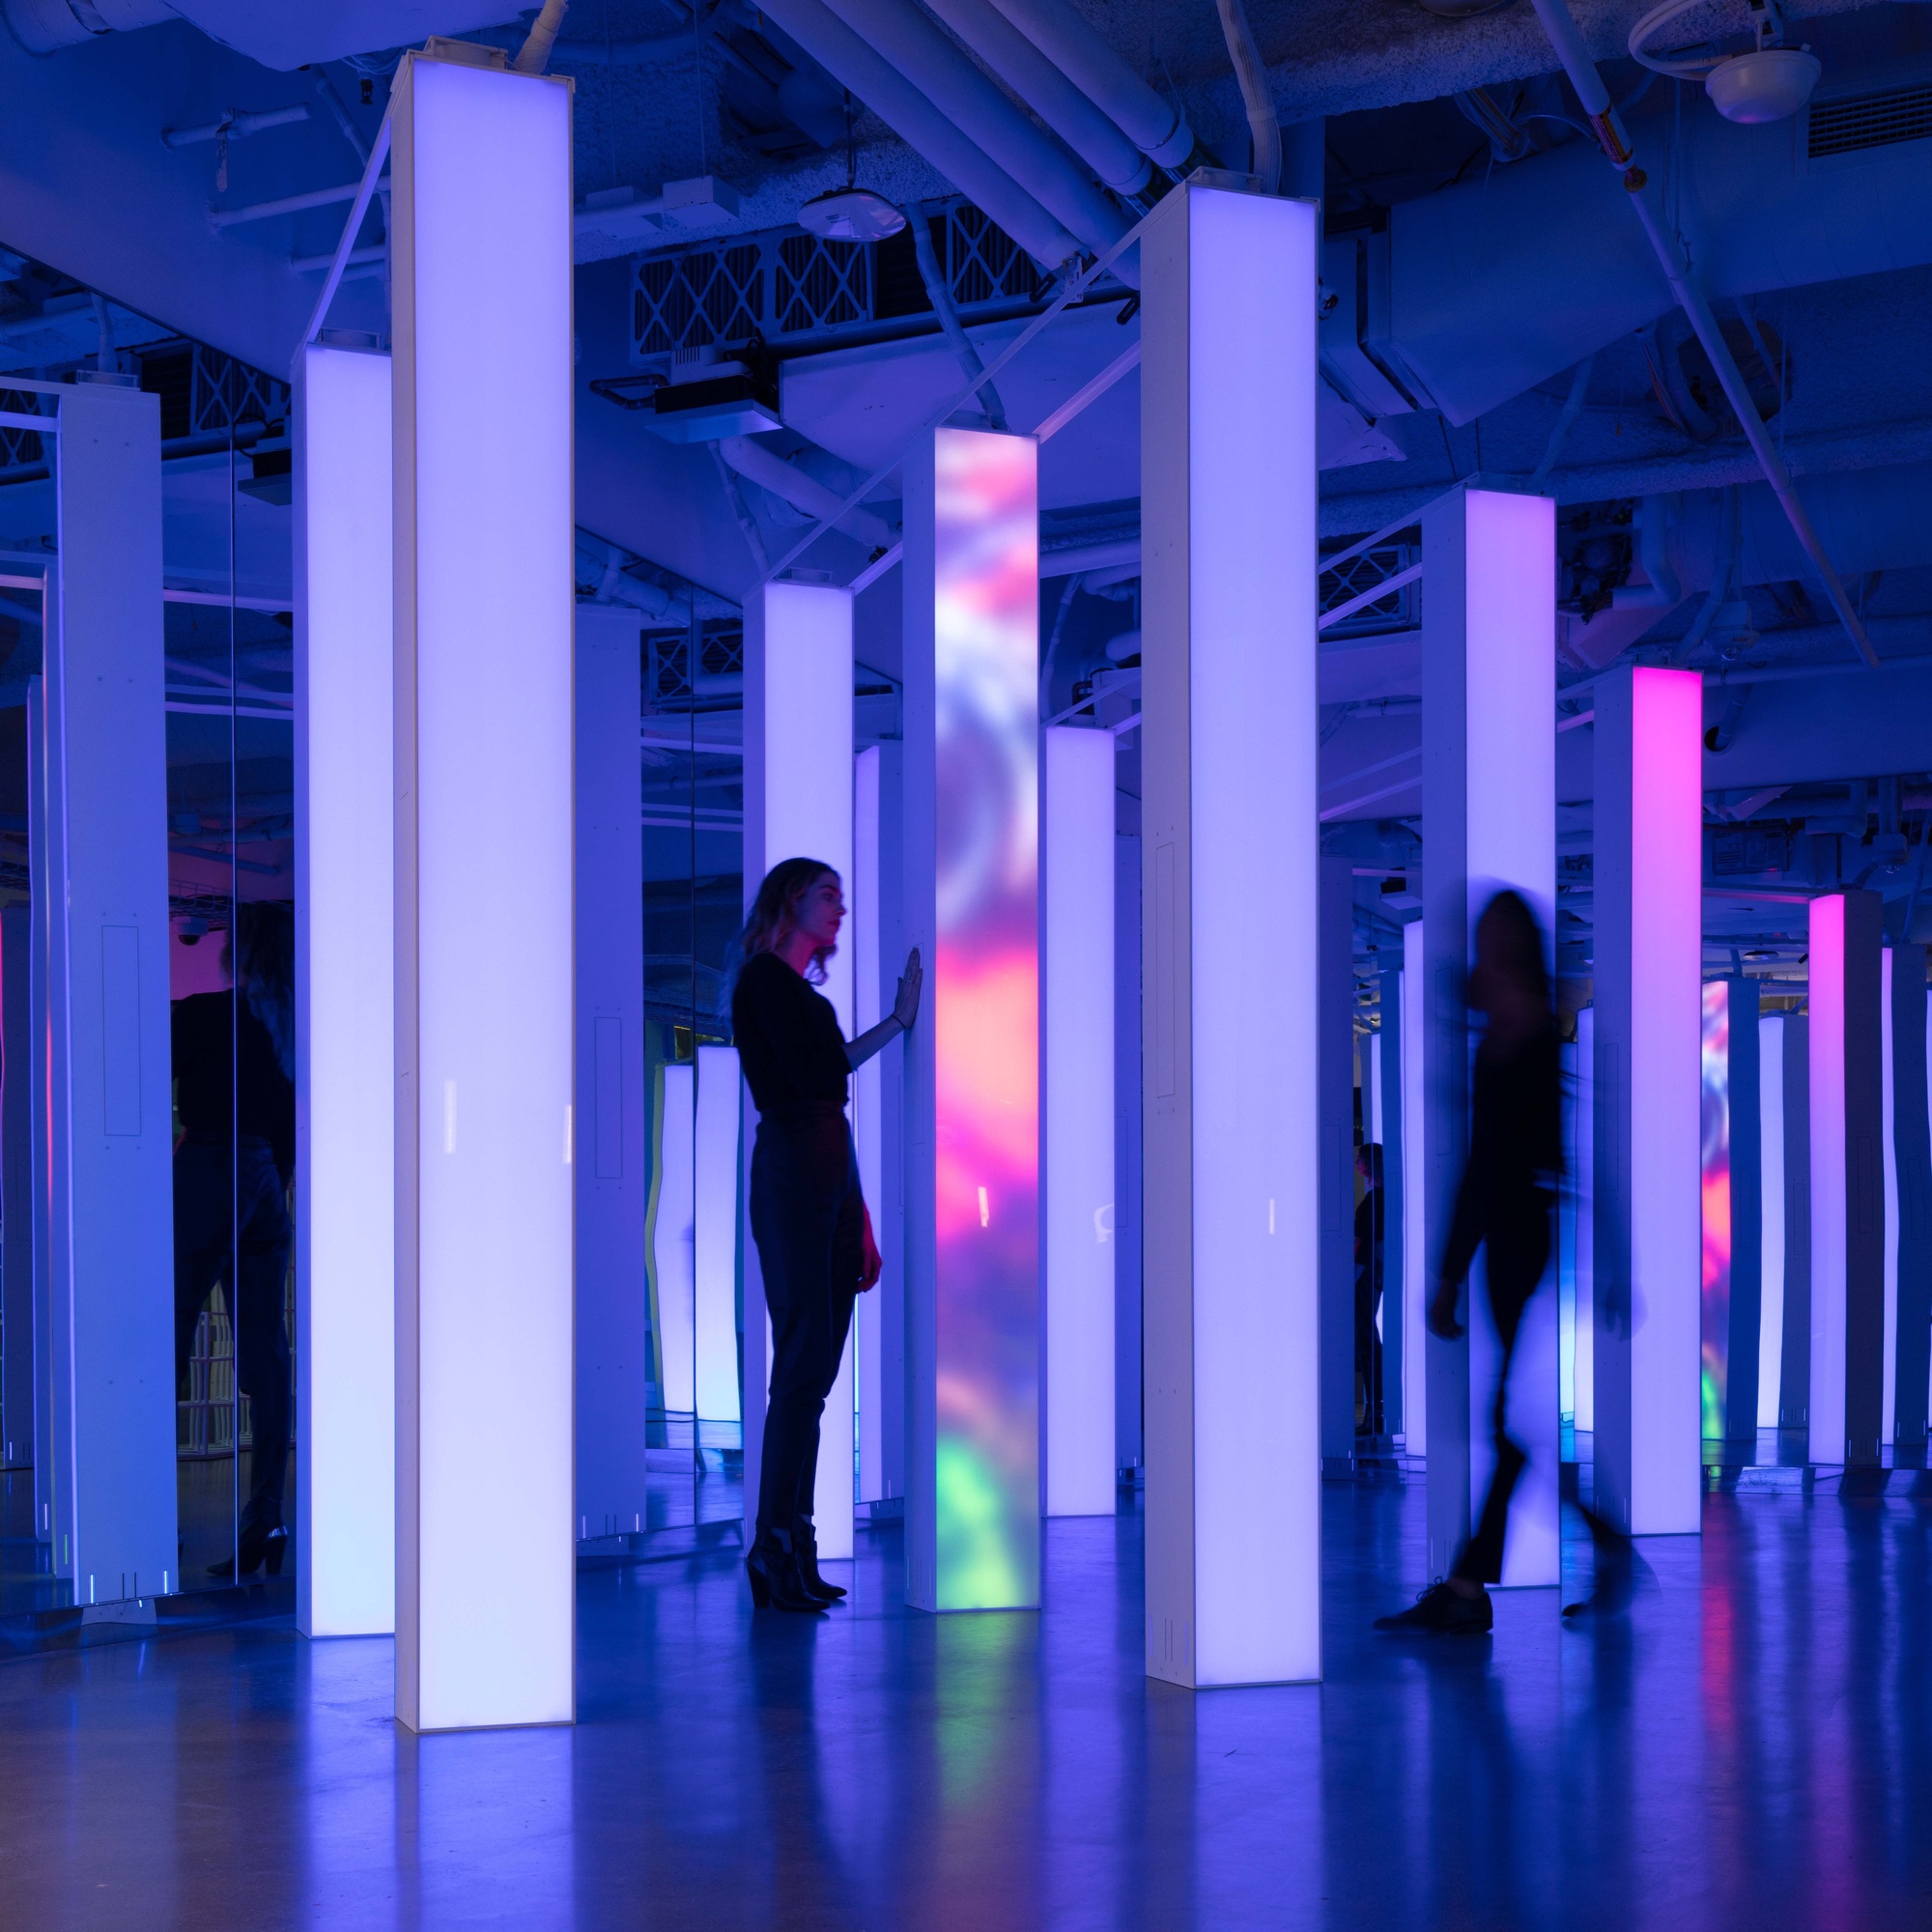 Two women standing between digital pillars with light purple gradient.